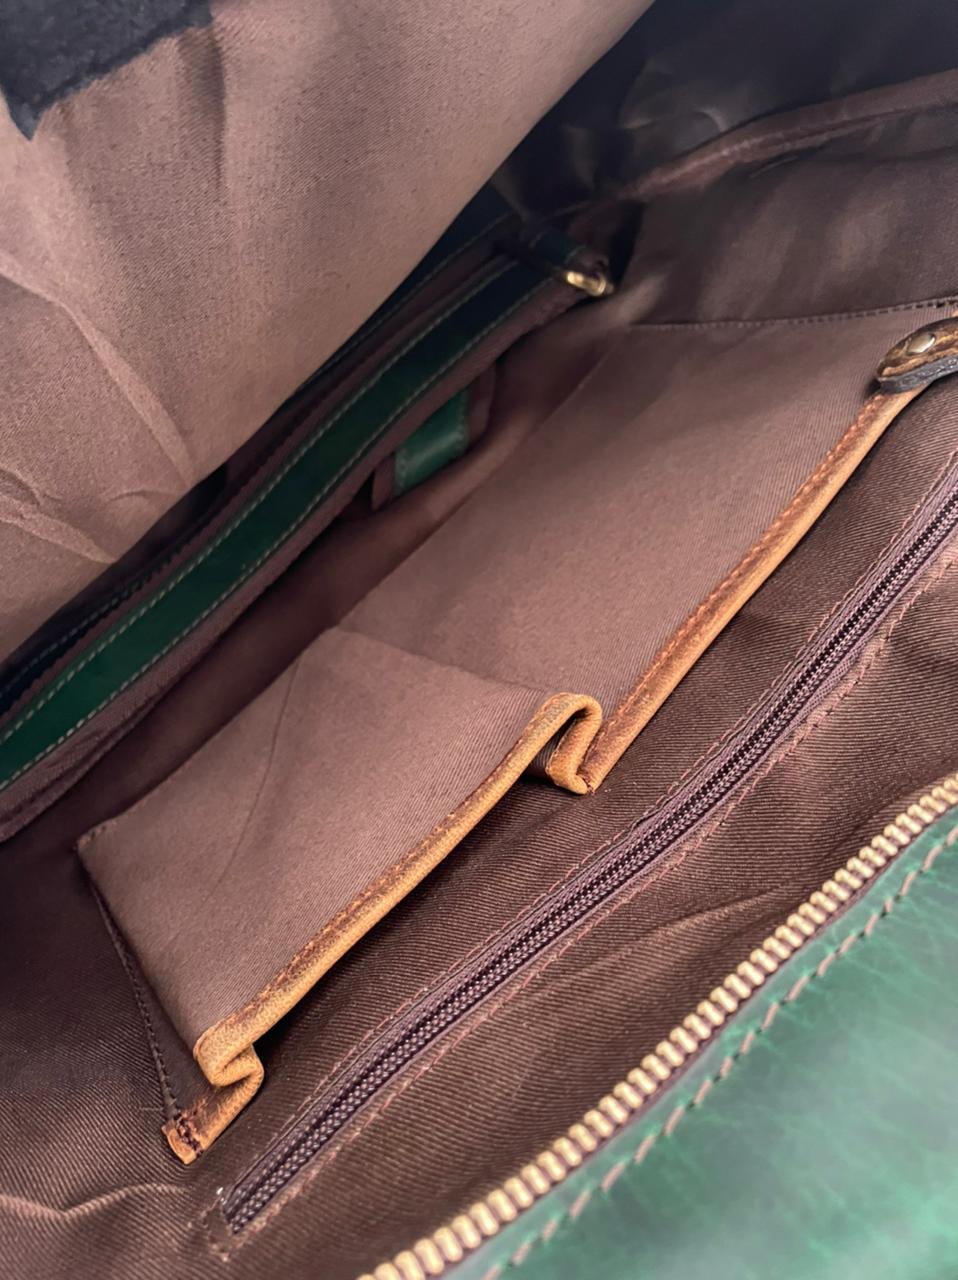 Emerald leather bag - genuine leather bag - messenger bag - emerald green - detail